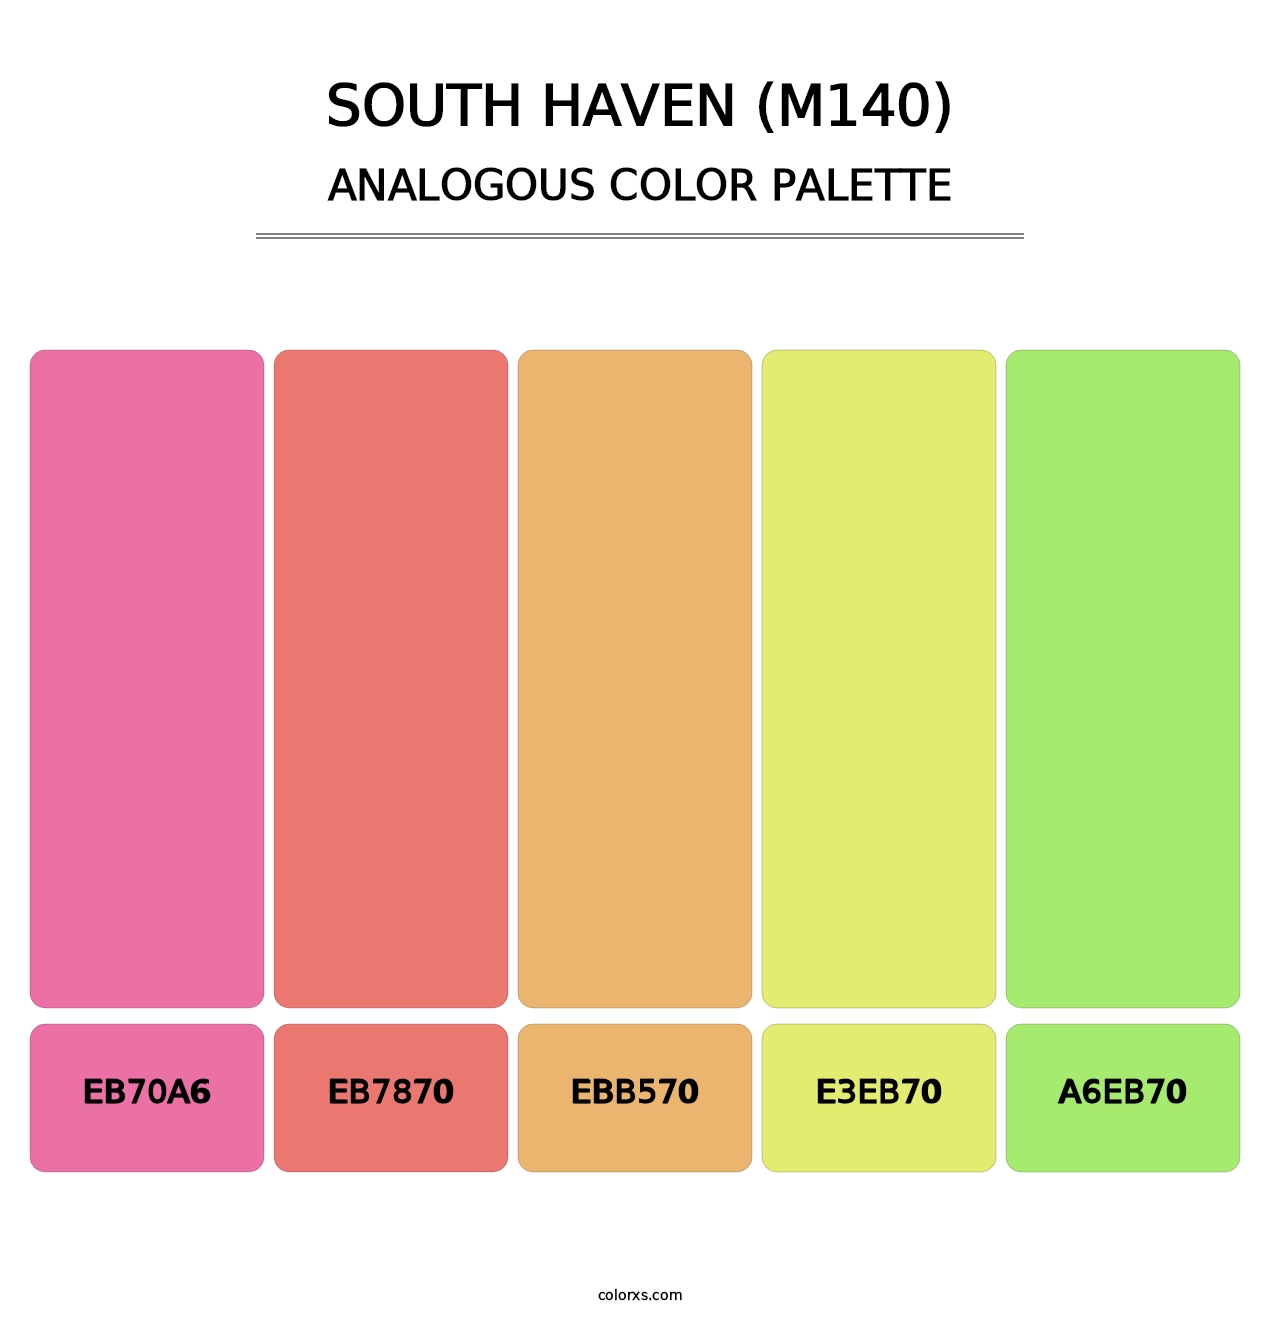 South Haven (M140) - Analogous Color Palette